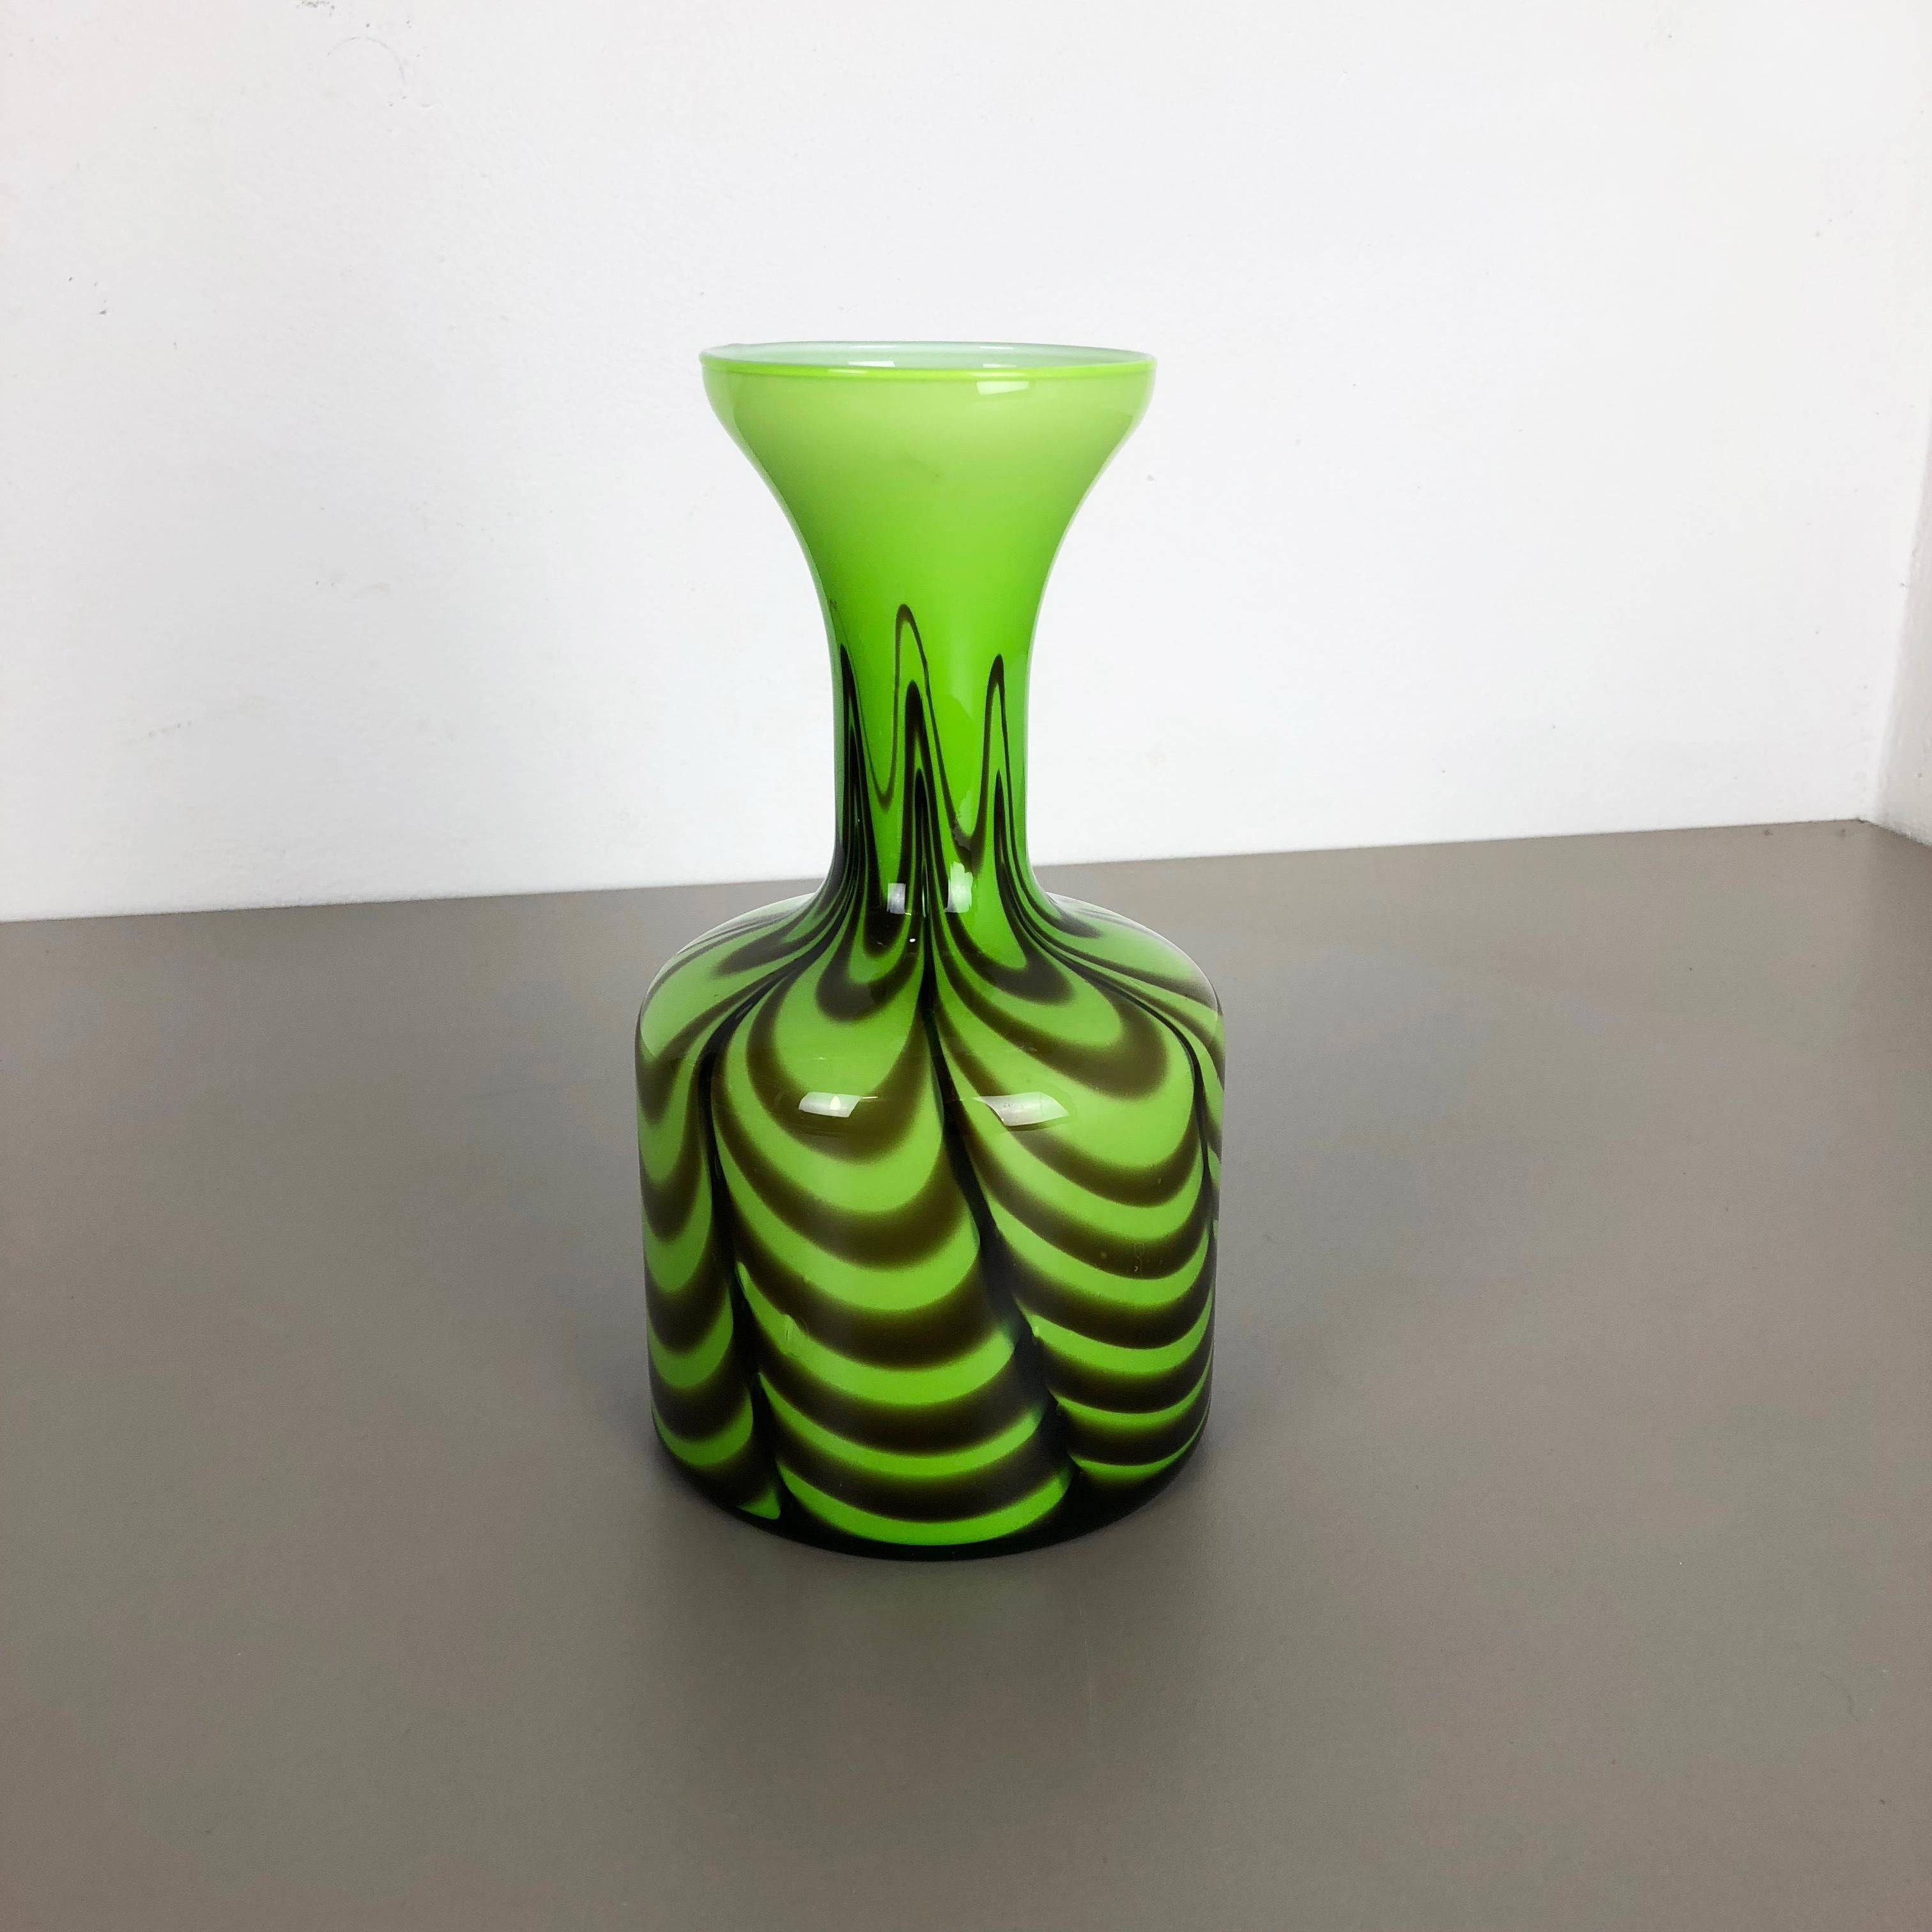 Artikel:

Pop-Art-Vase


Produzent:

Opalin Florenz



Jahrzehnt:

1970s


Originale mundgeblasene Pop Art Vase aus den 1970er Jahren, hergestellt in Italien von Opaline Florenz. Hergestellt aus hochwertigem italienischem